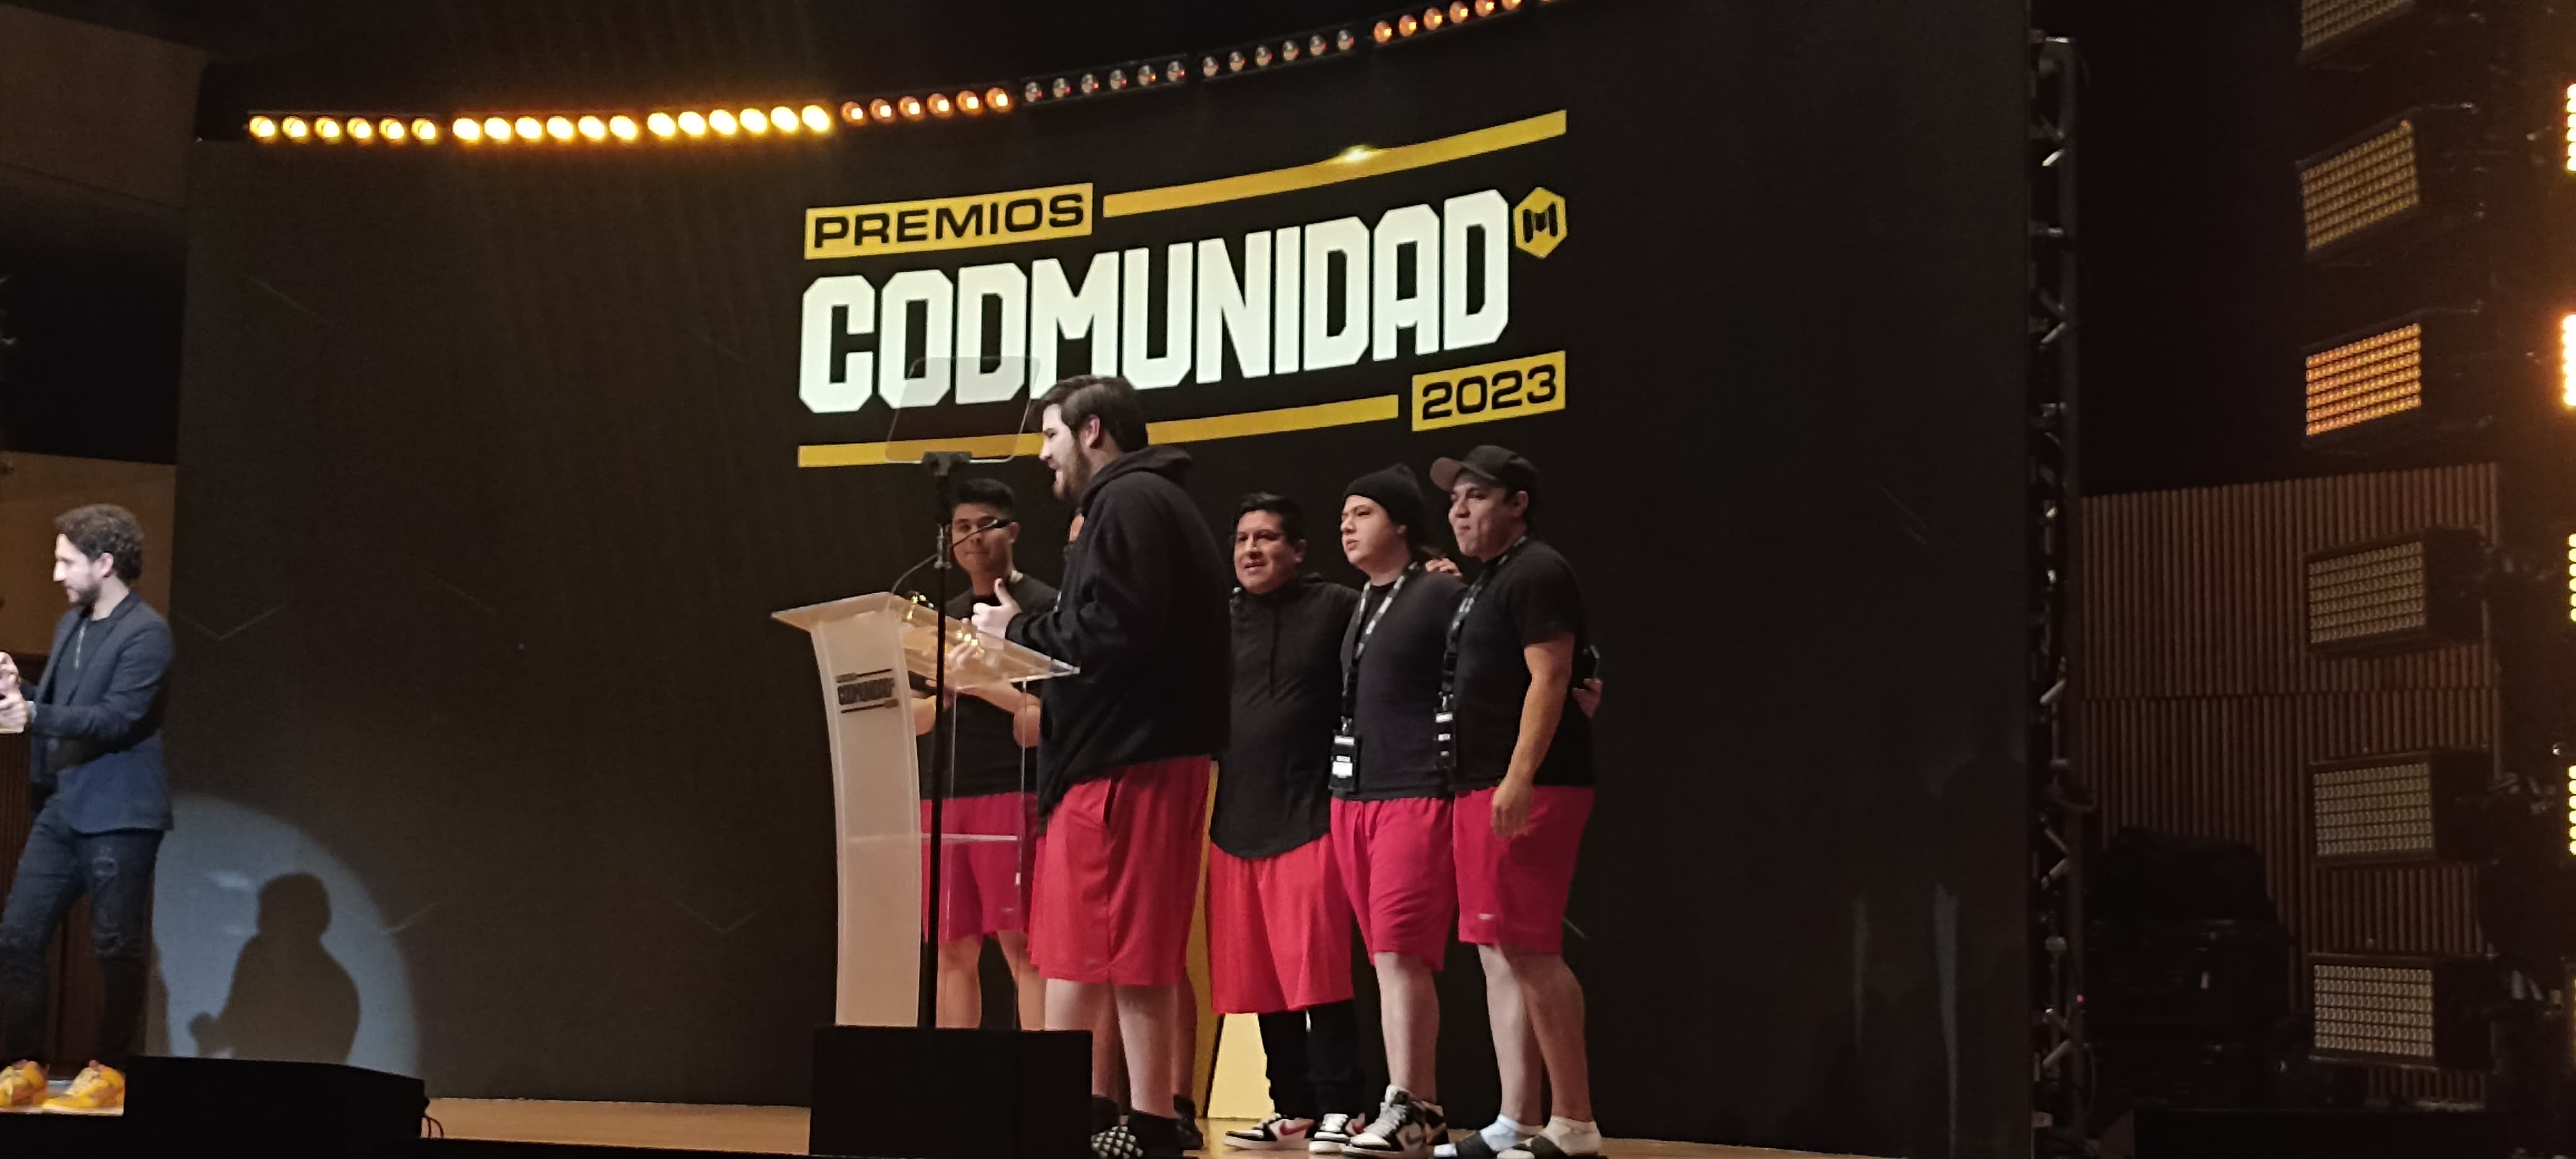 Premios CODMUNIDAD 2023 en Ciudad de México 18